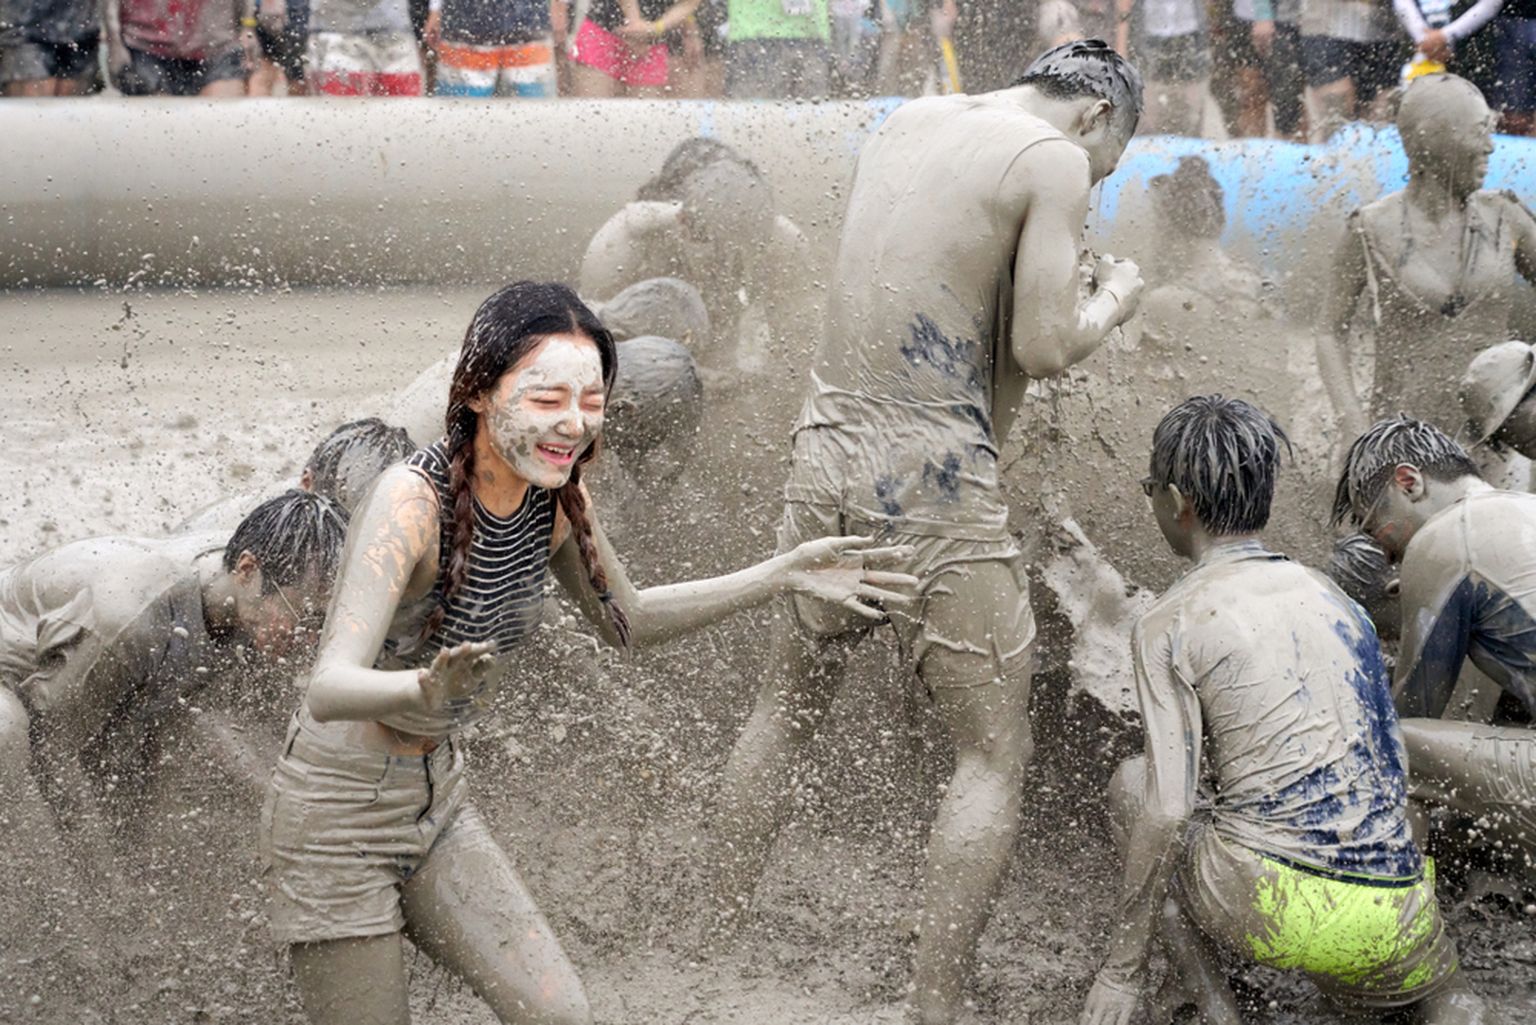 Lisaks laisklemisele on Lõuna-Koreas populaarne ka mudafestival